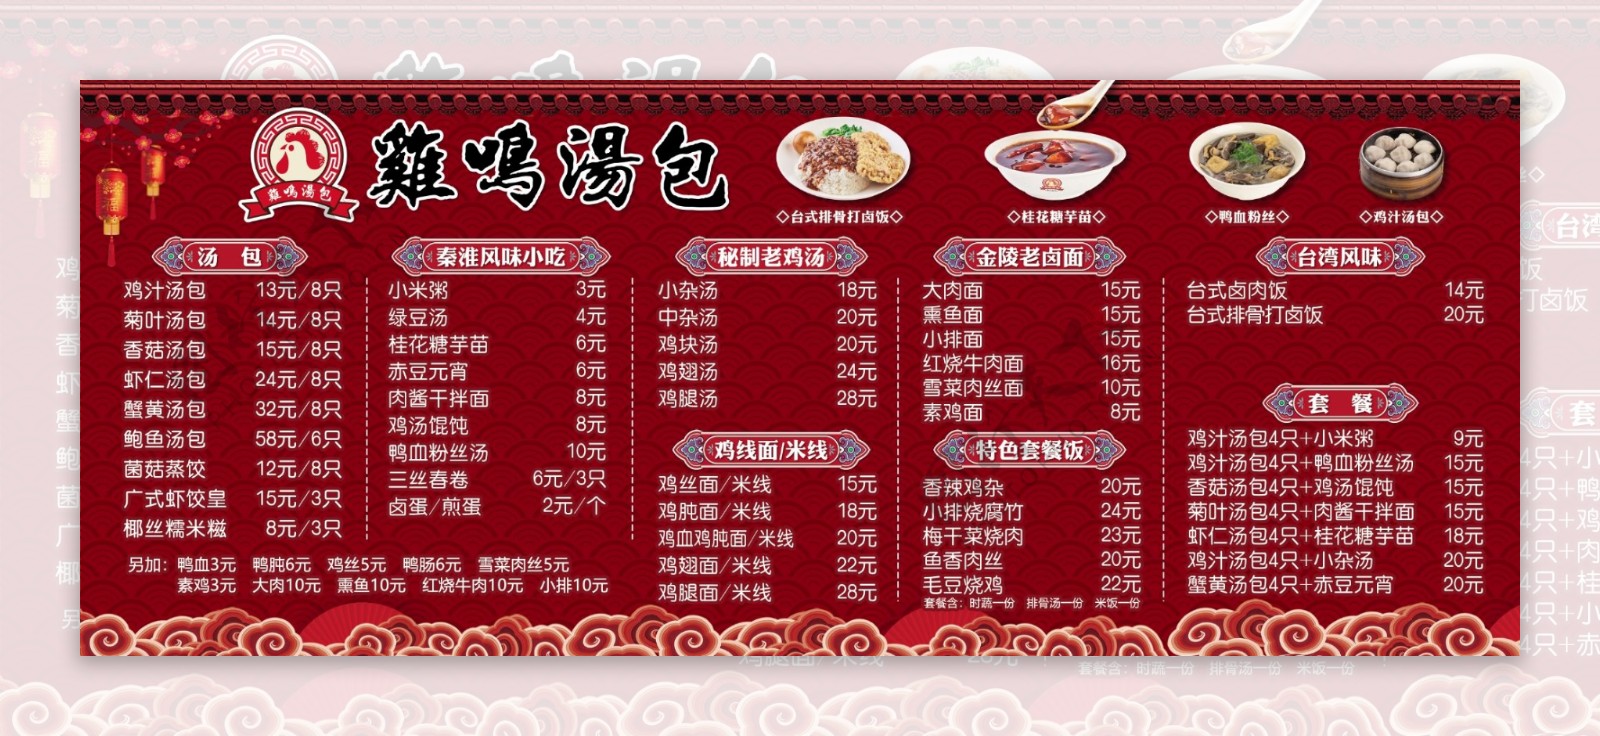 中国风鸡鸣汤包菜单